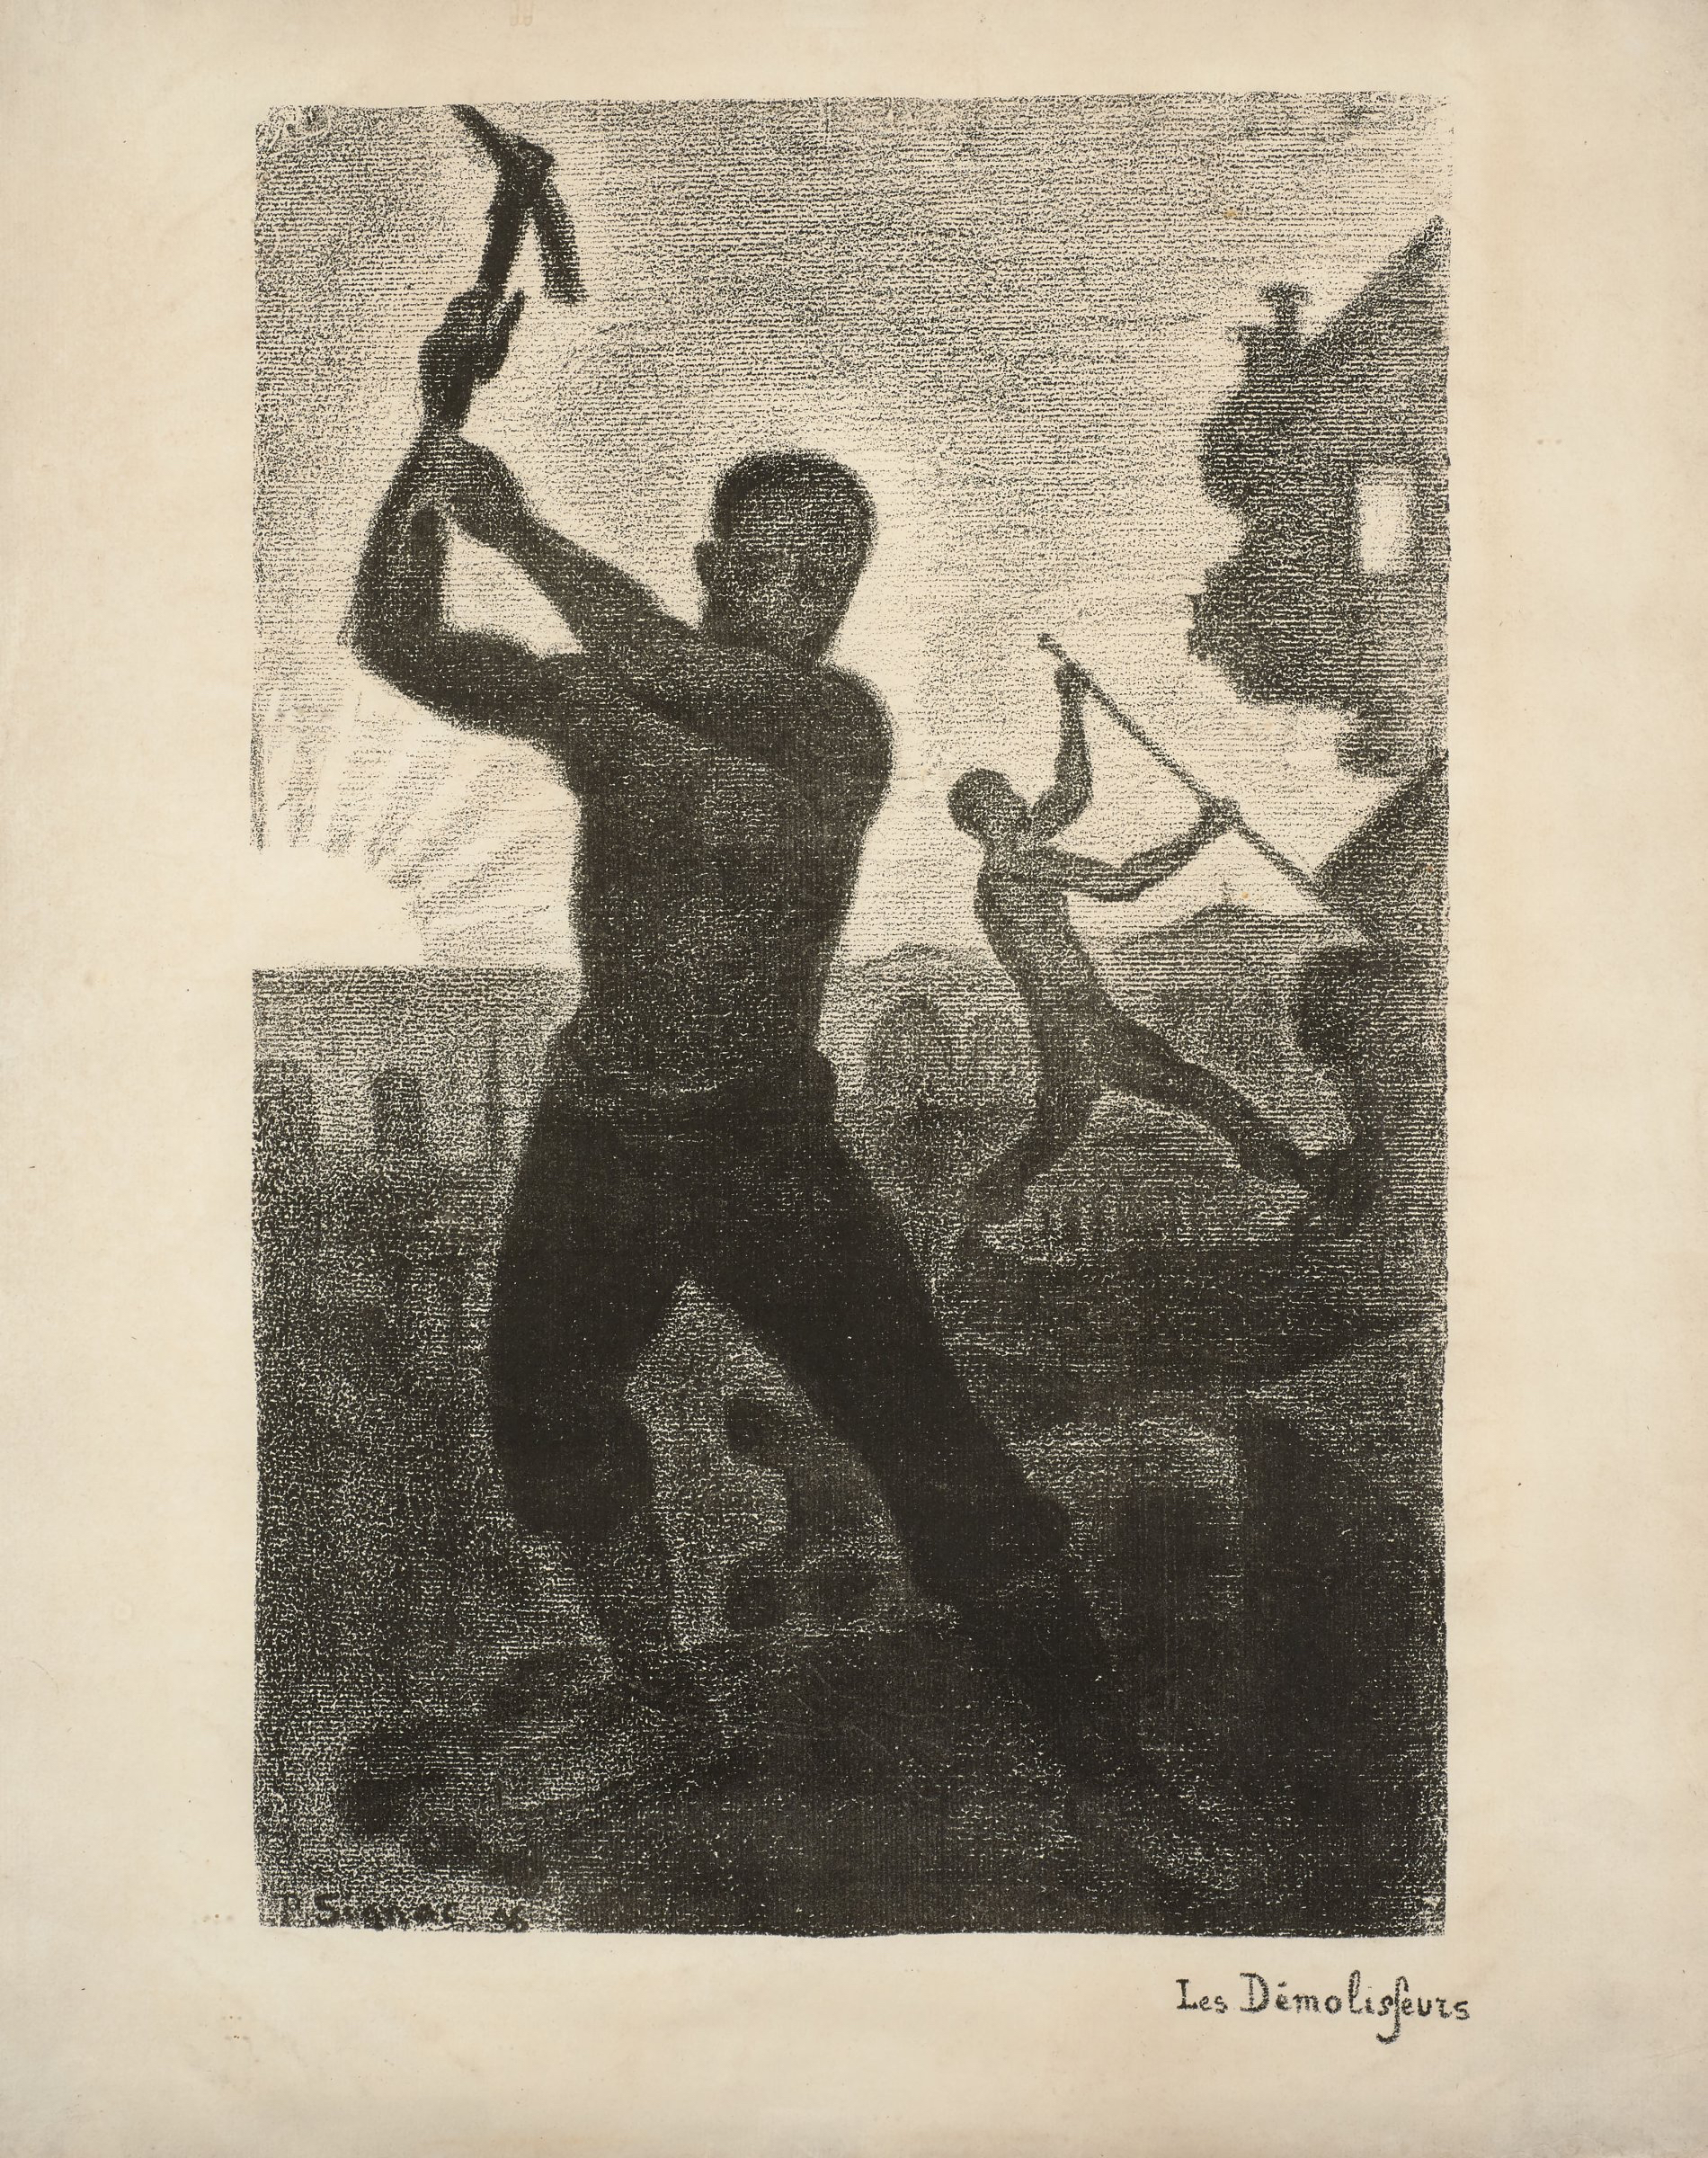 Paul Signac, Les Démolisseurs, lithograph, 1896